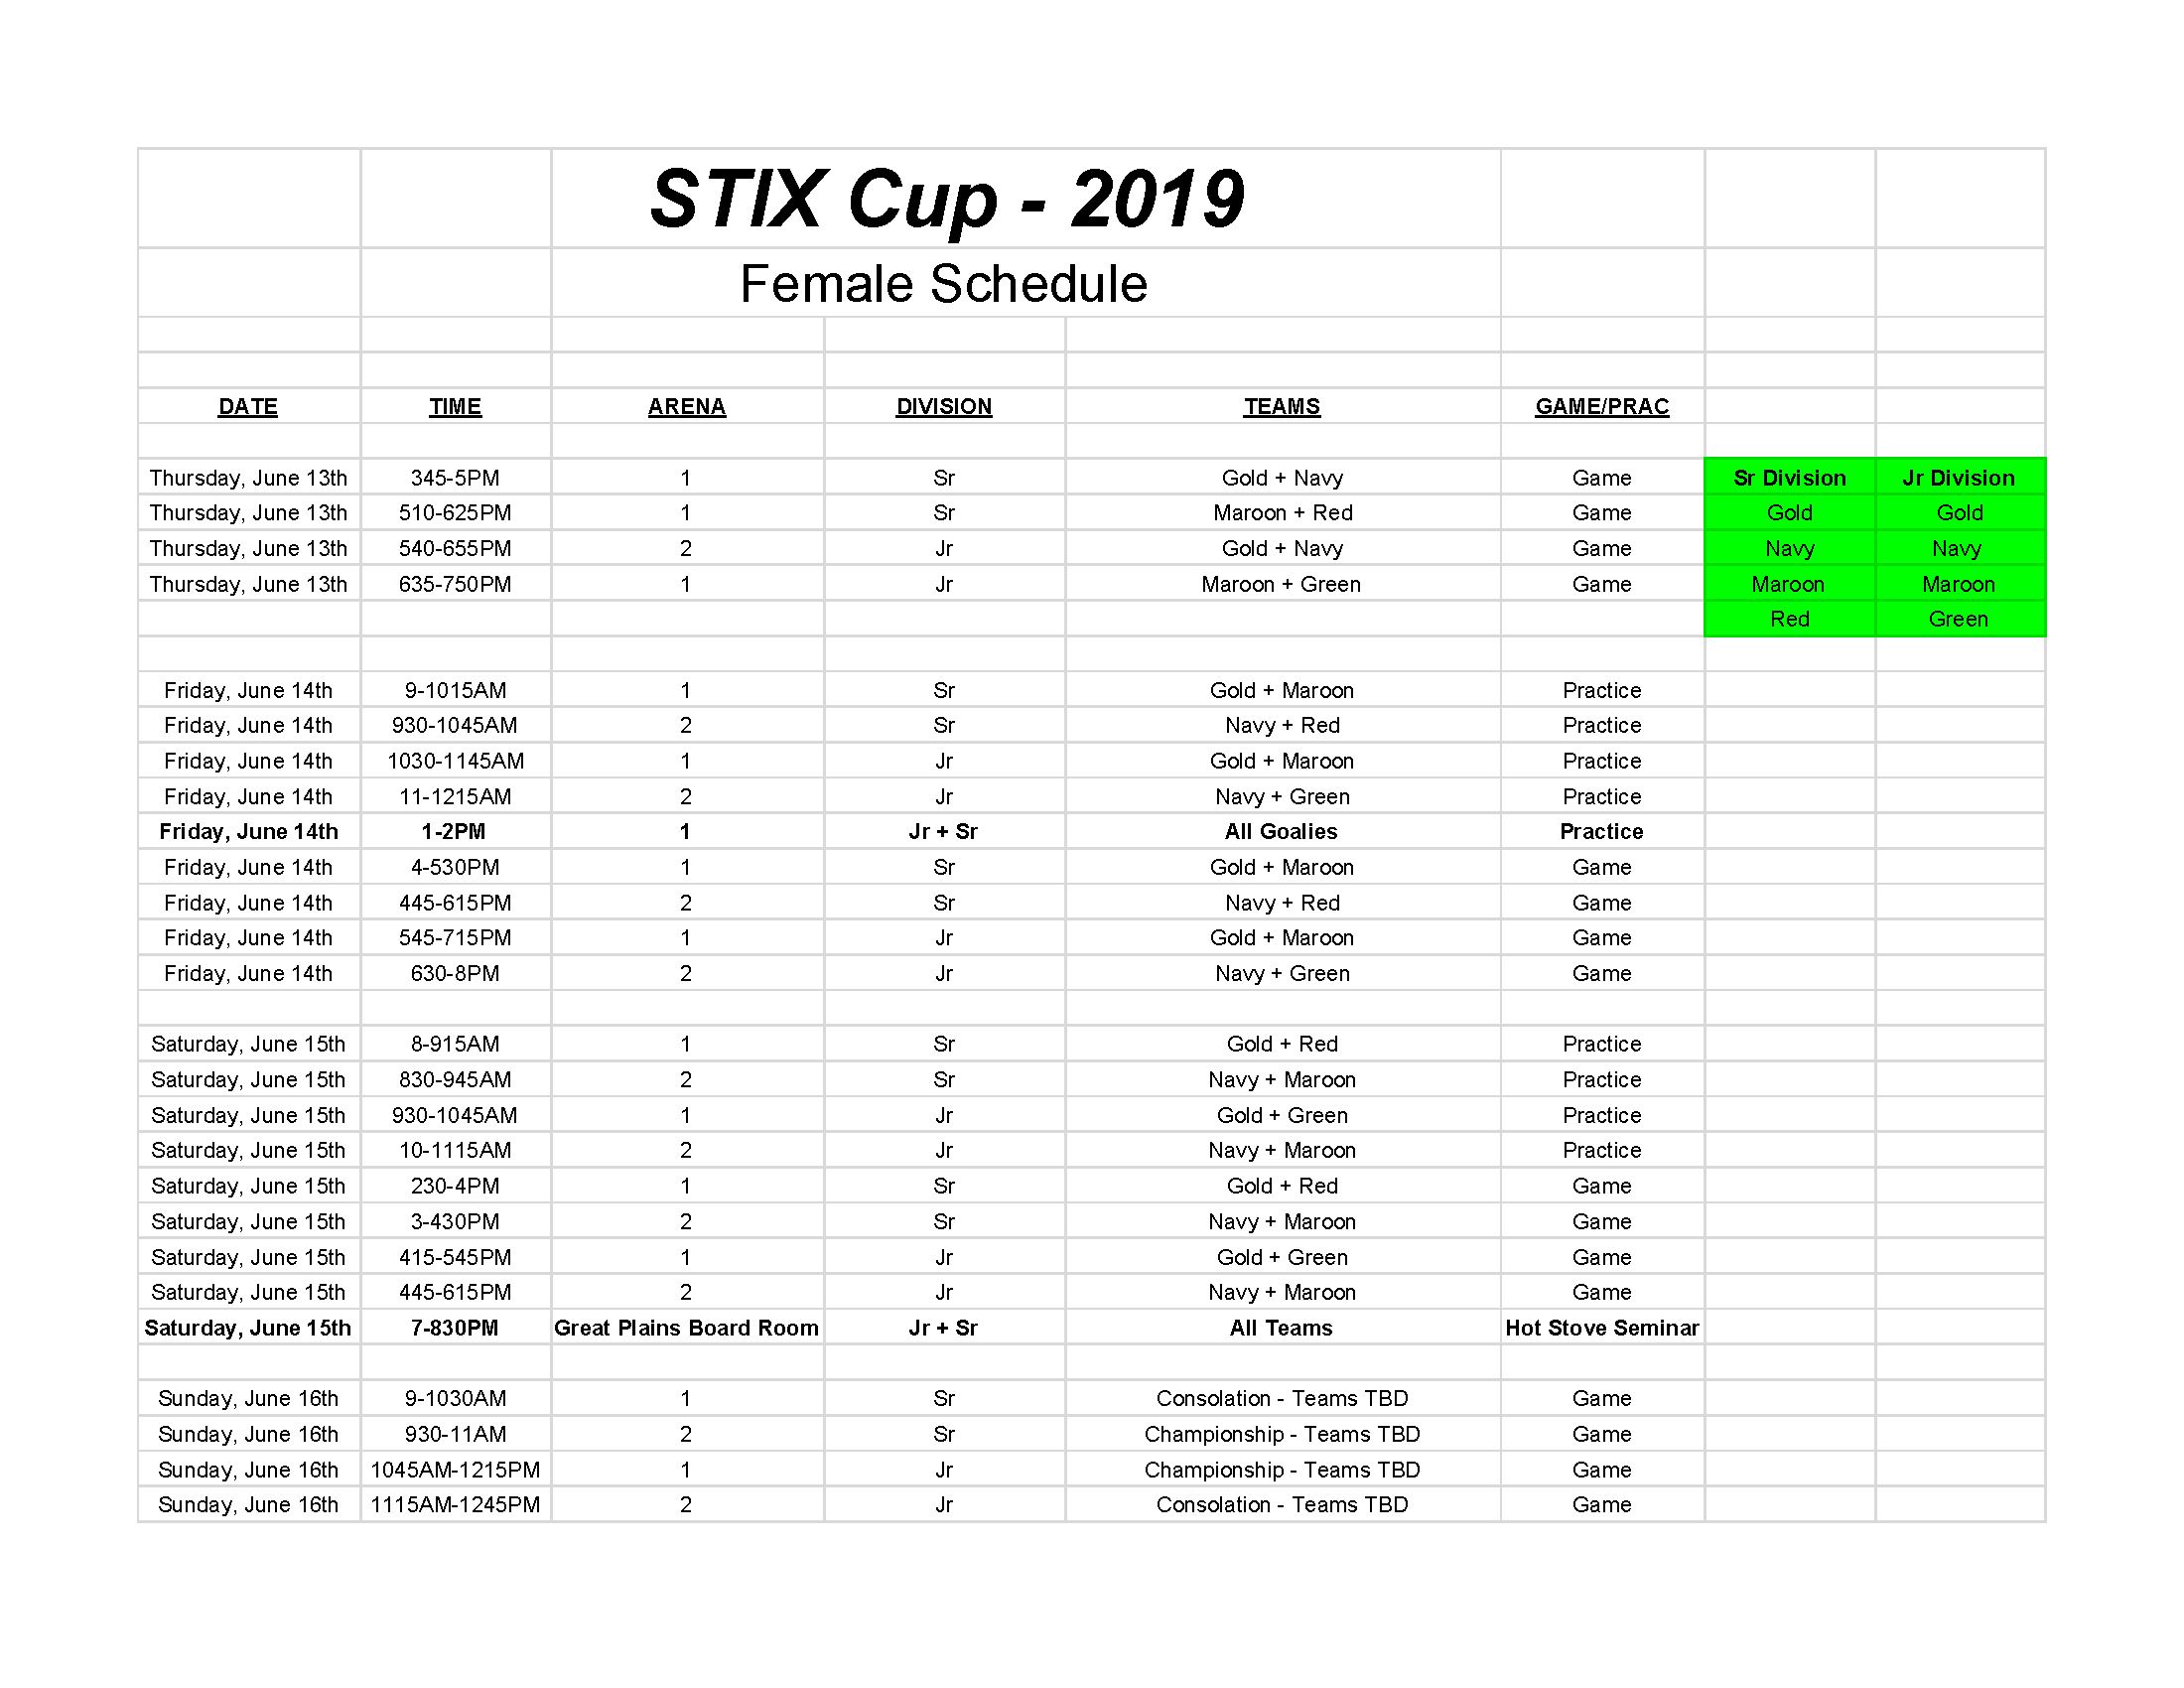 STIX Cup Schedule Females